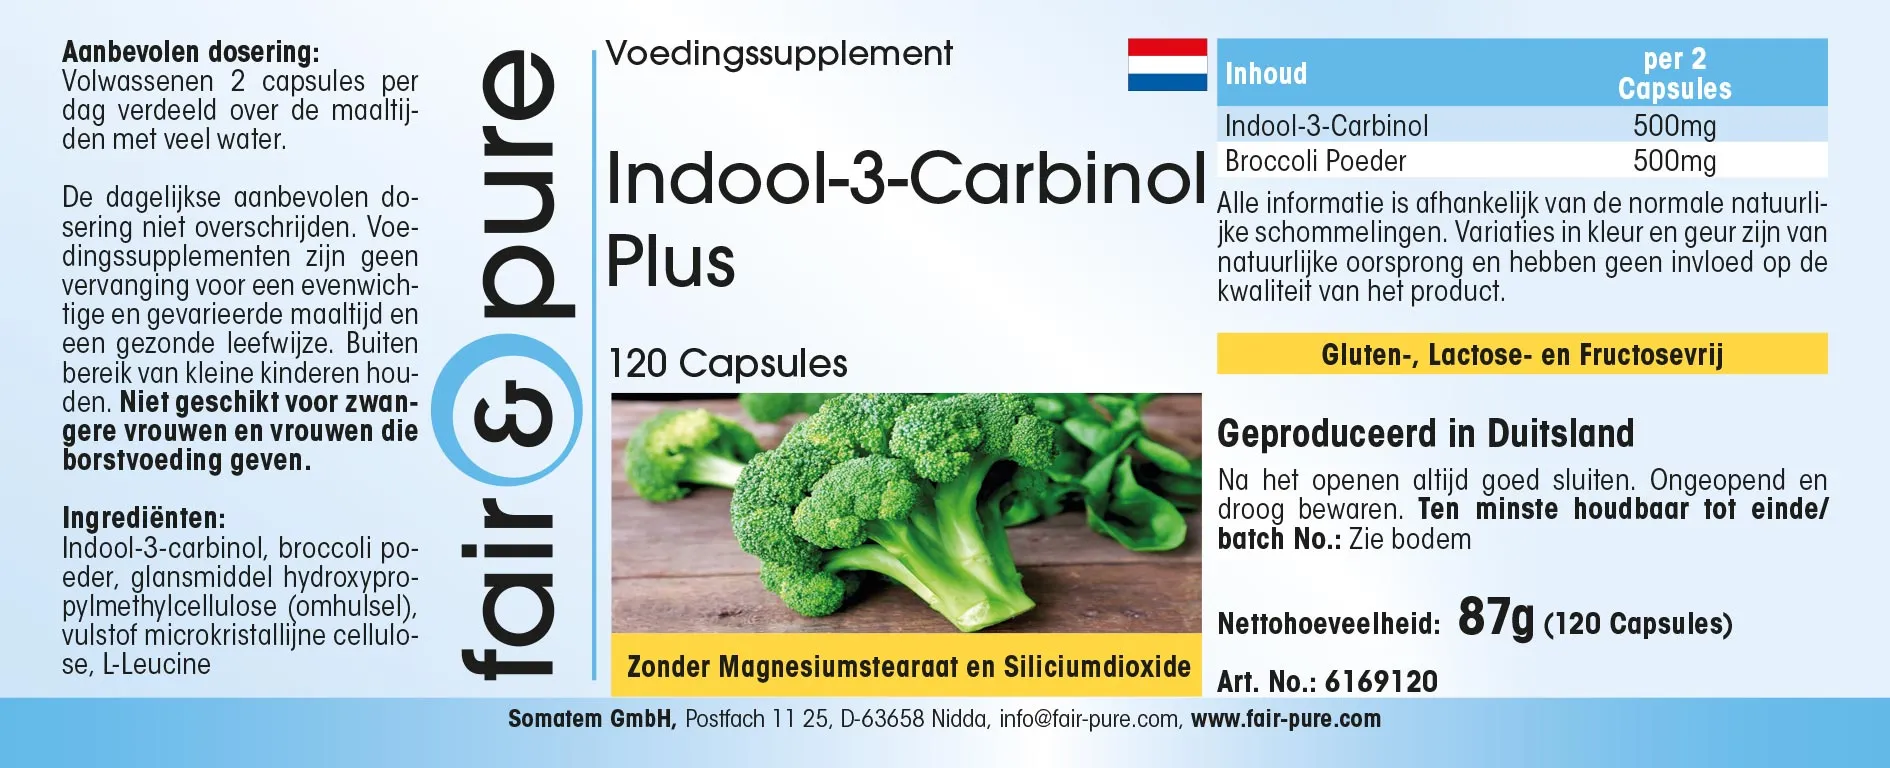 Indol-3-Carbinol Plus